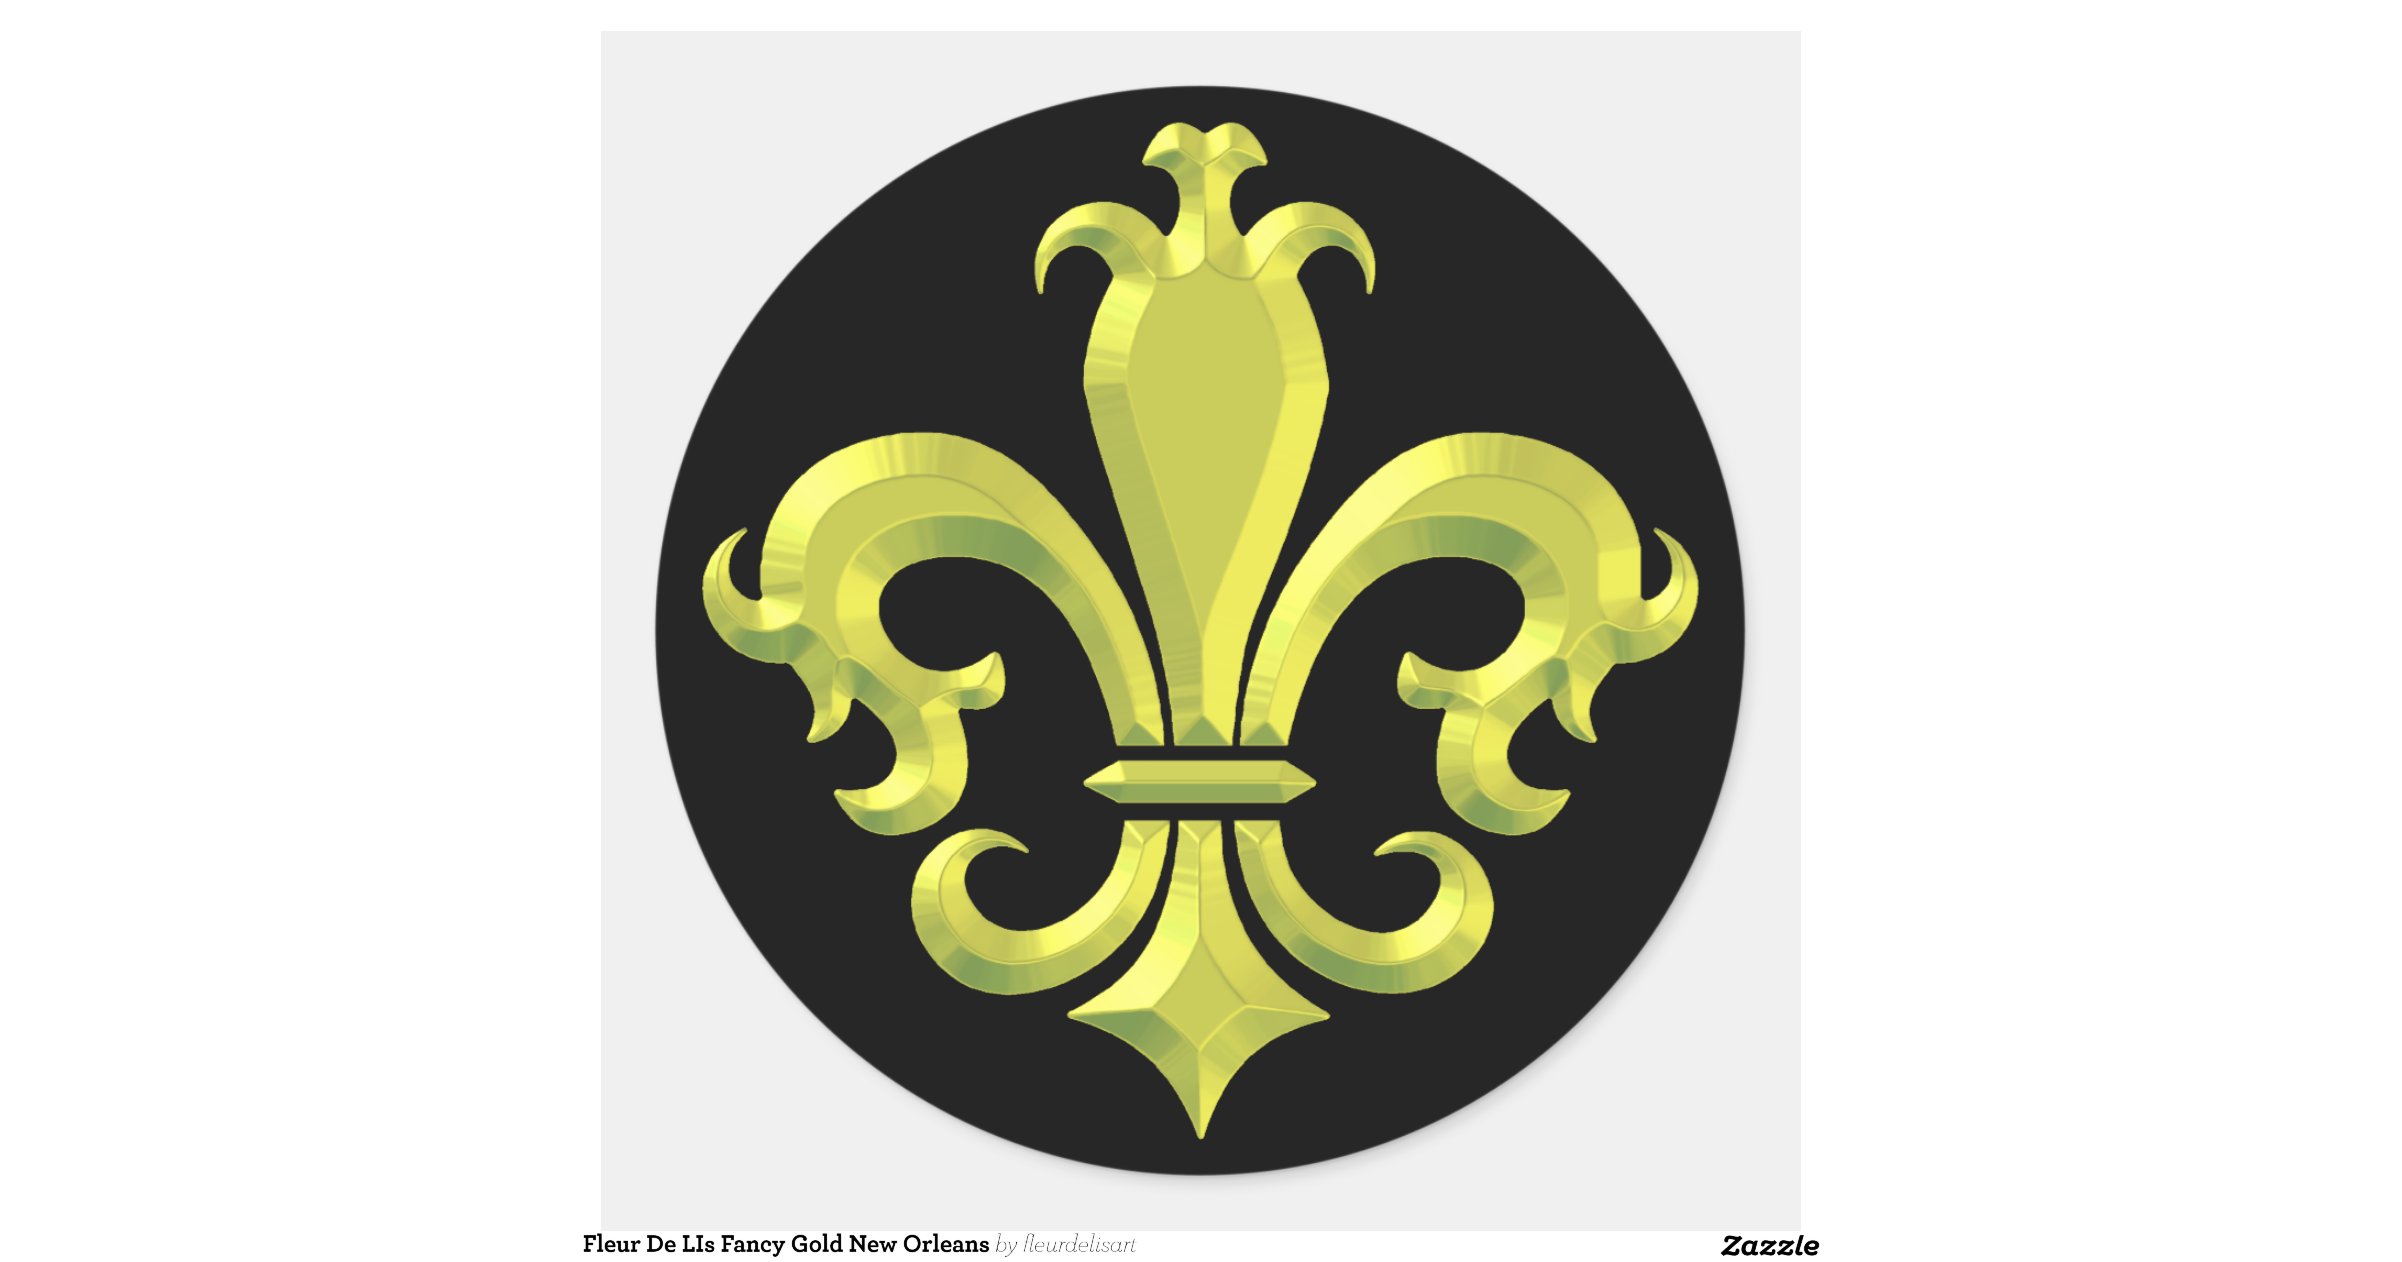 Fleur De Lis Fancy Gold New Orleans Classic Round Sticker Zazzle